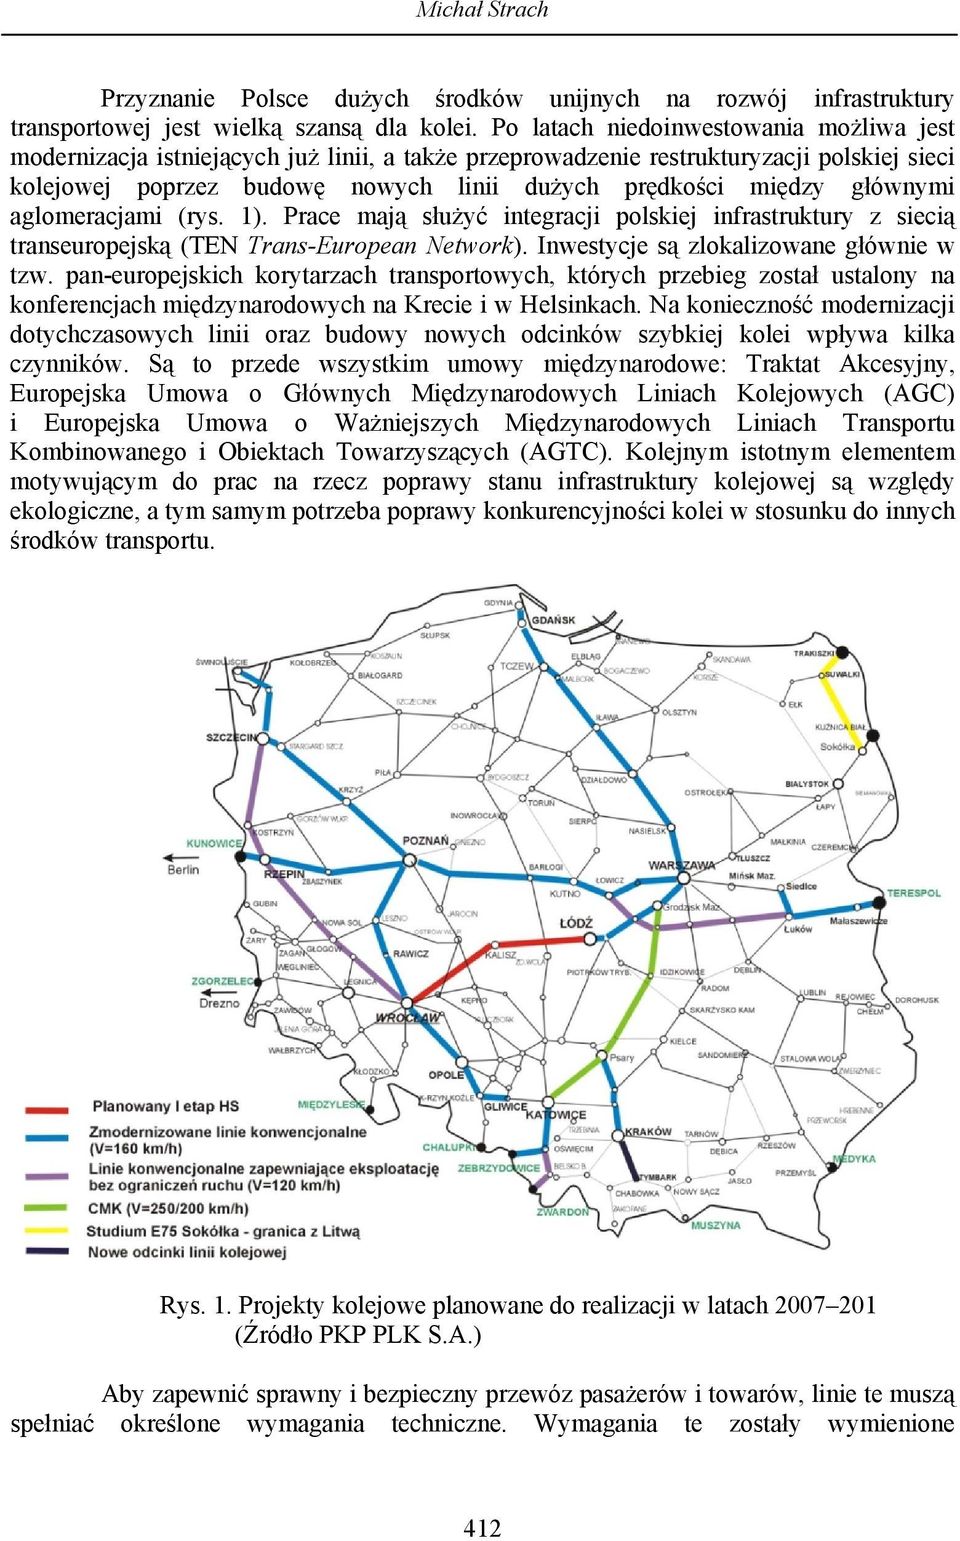 głównymi aglomeracjami (rys. 1). Prace mają służyć integracji polskiej infrastruktury z siecią transeuropejską (TEN Trans-European Network). Inwestycje są zlokalizowane głównie w tzw.